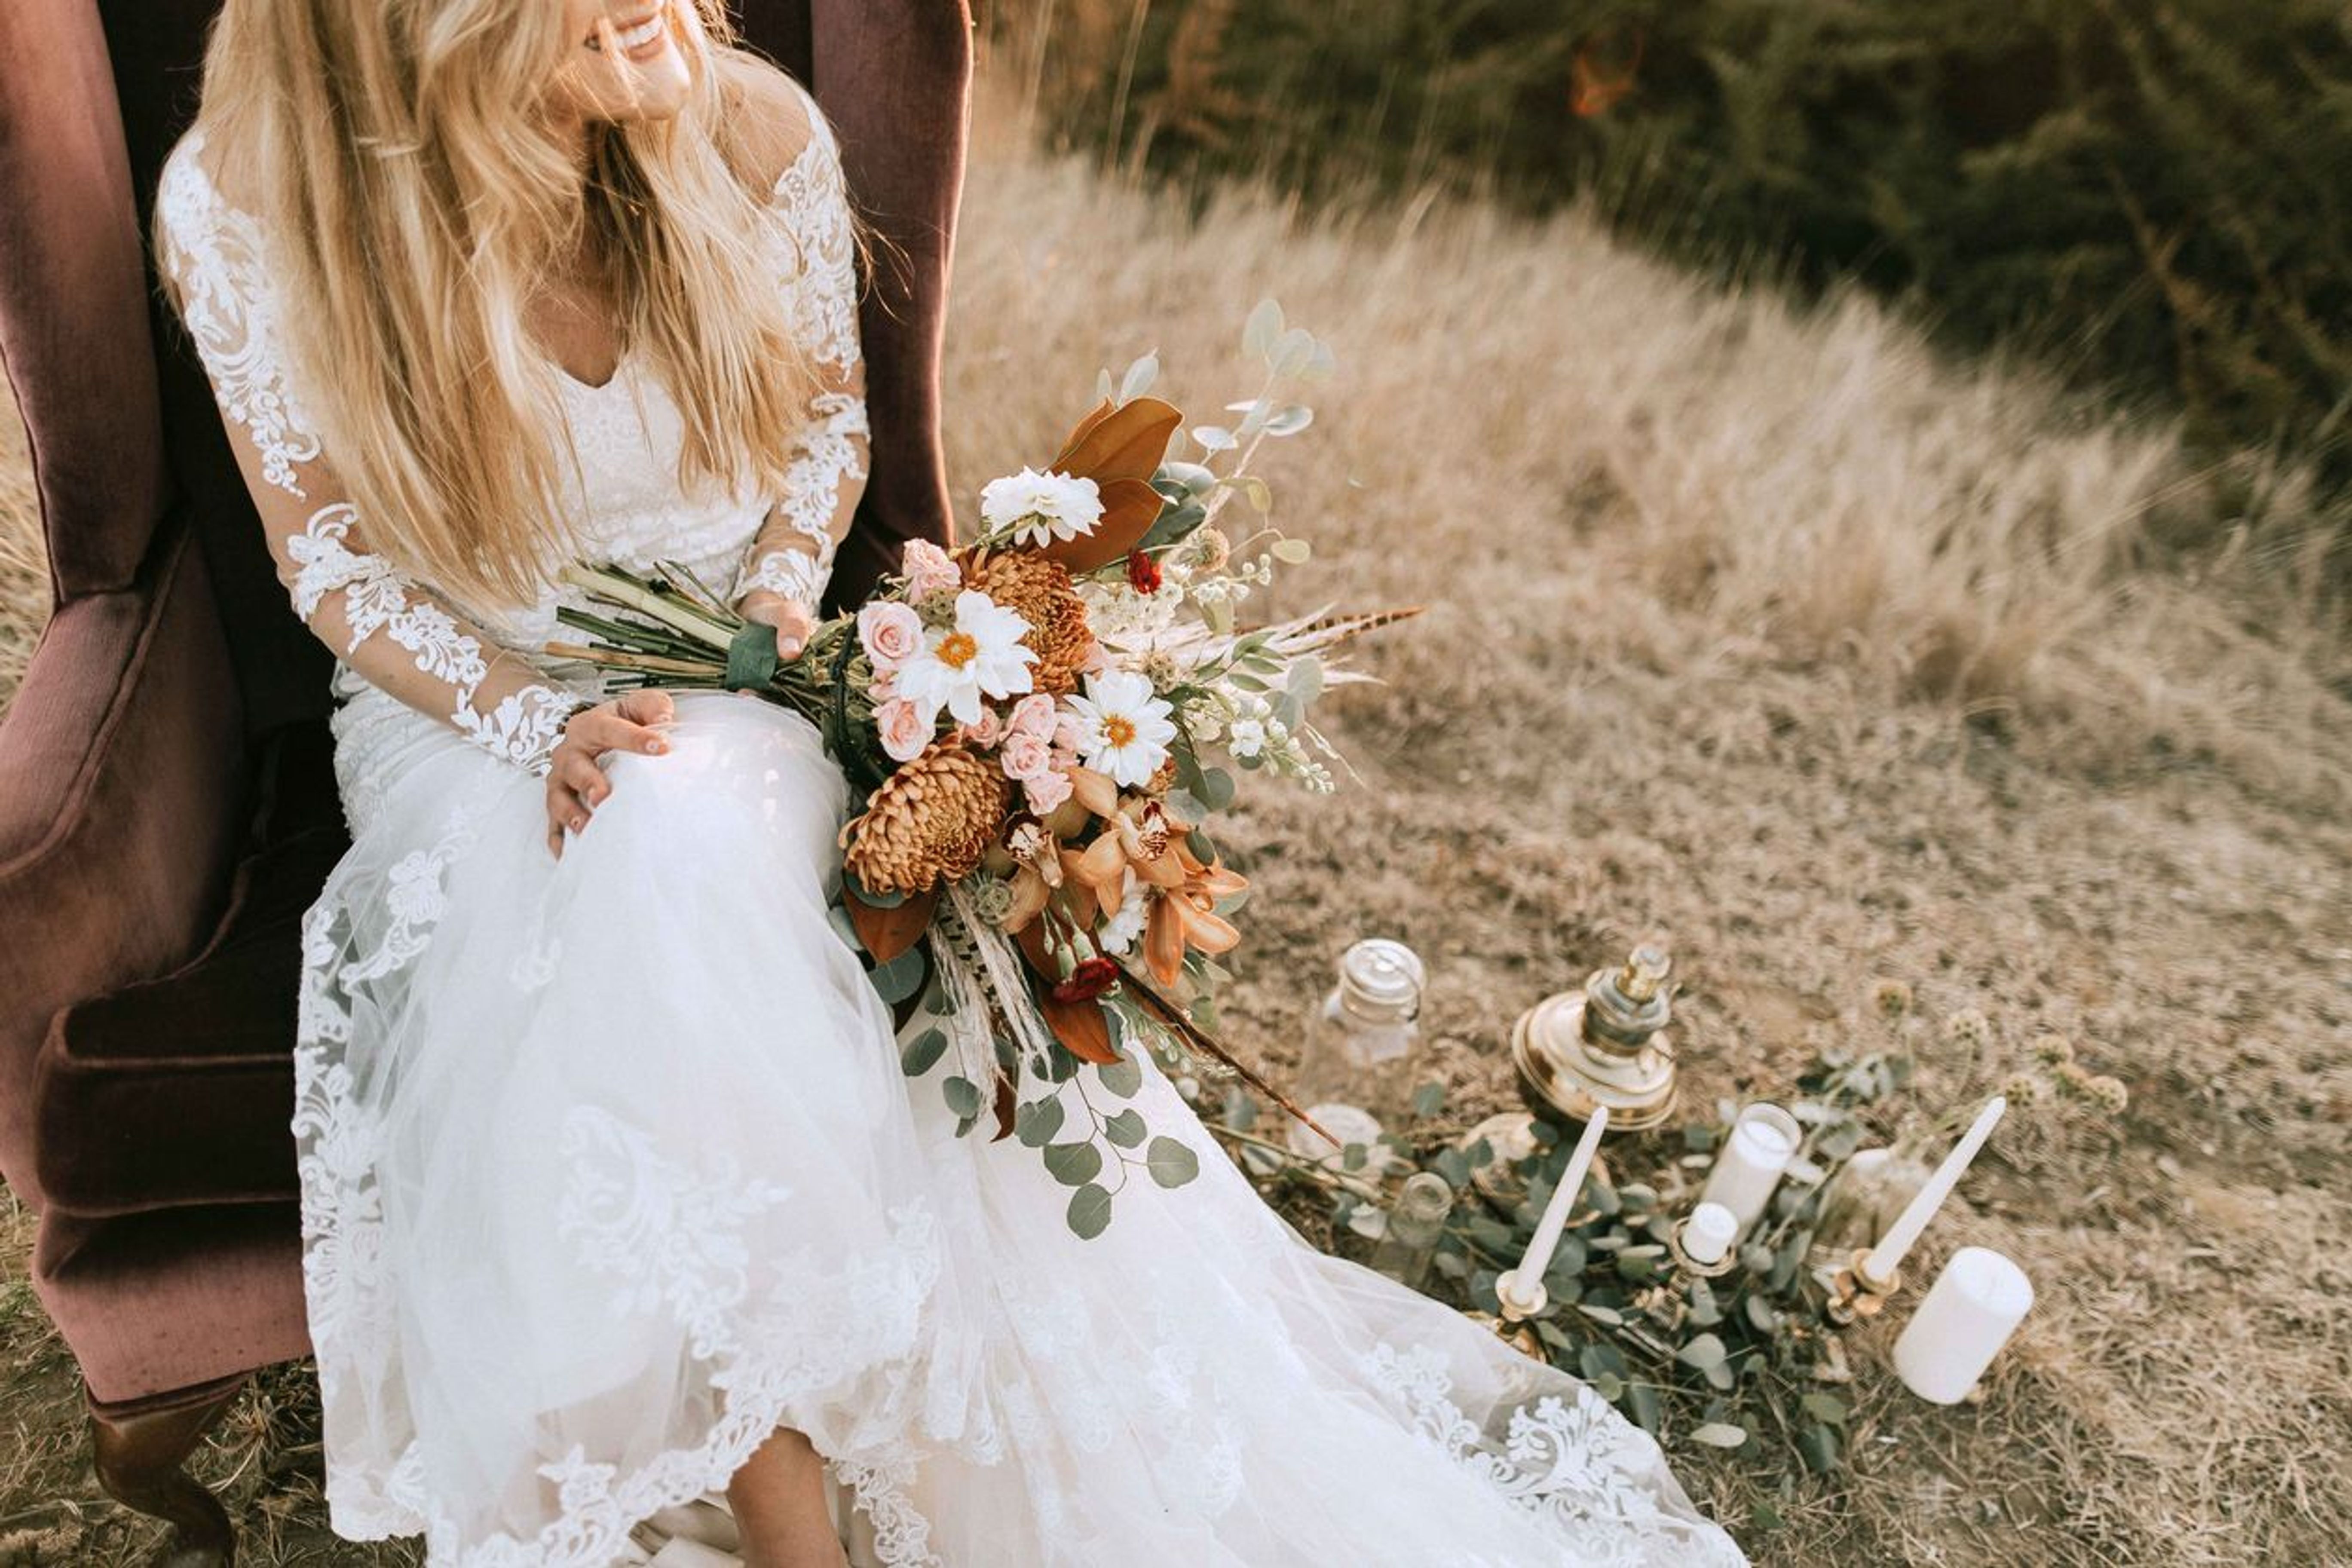 Mariage en été : les plus belles idées déco repérées sur Instagram